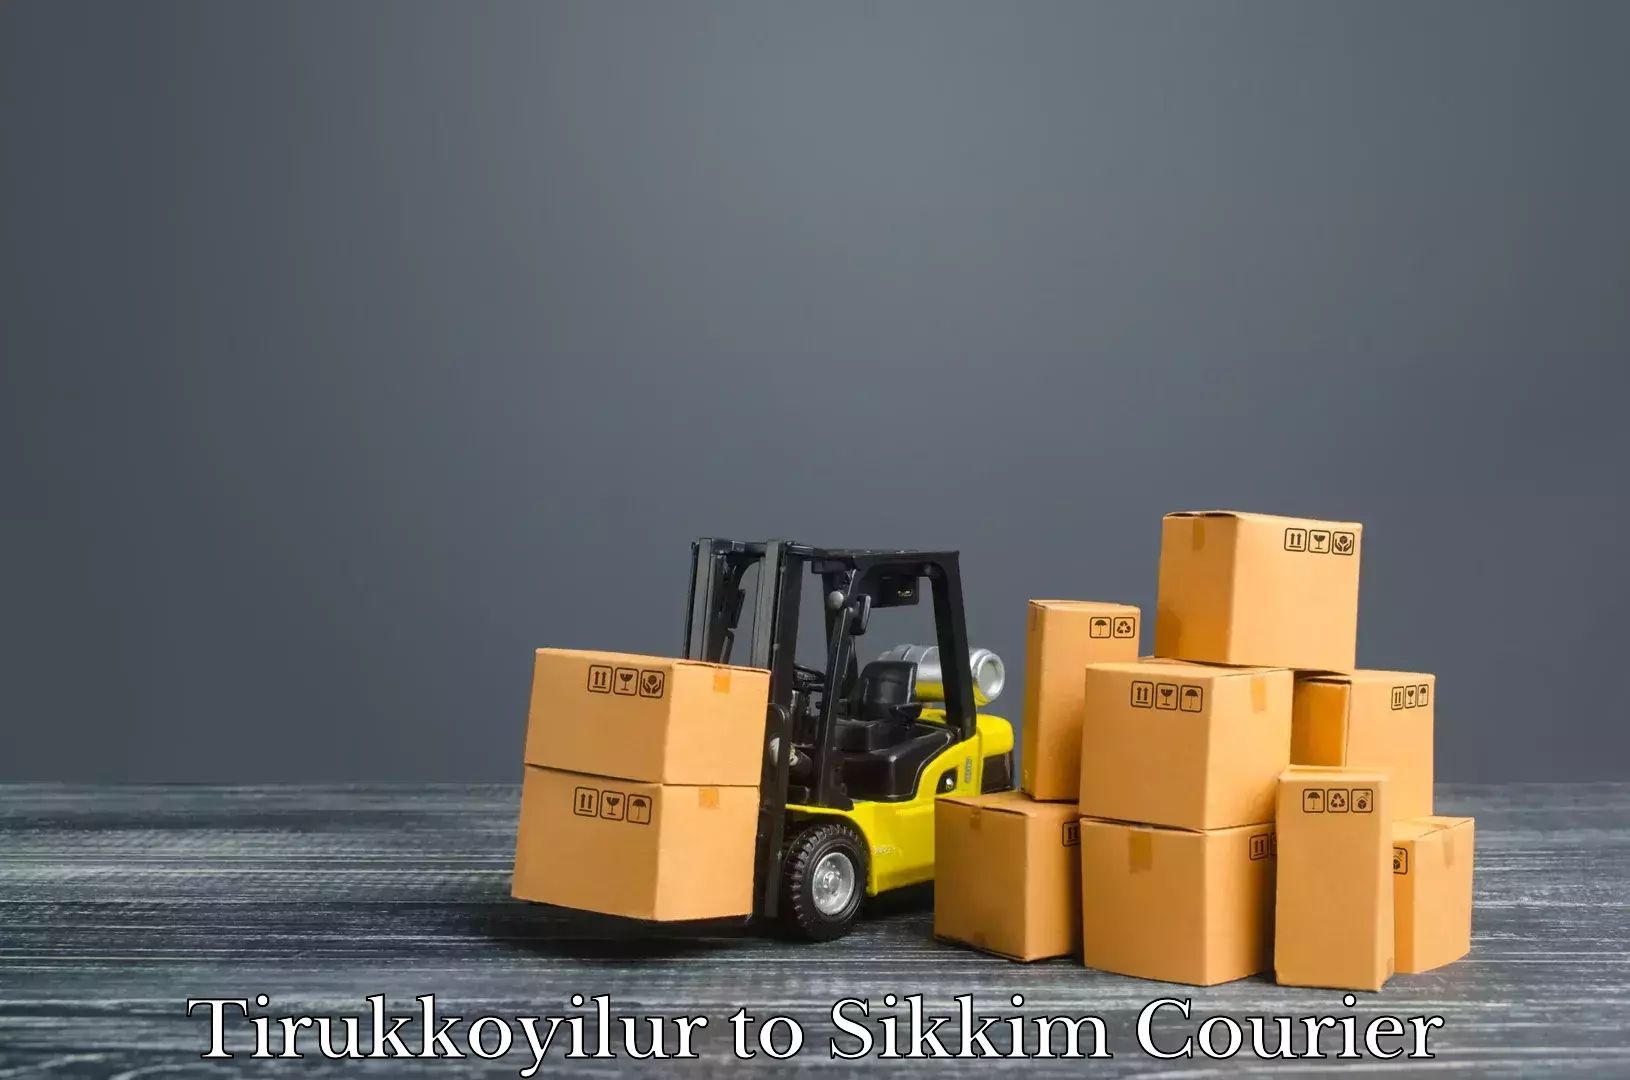 Simplified luggage transport Tirukkoyilur to Sikkim